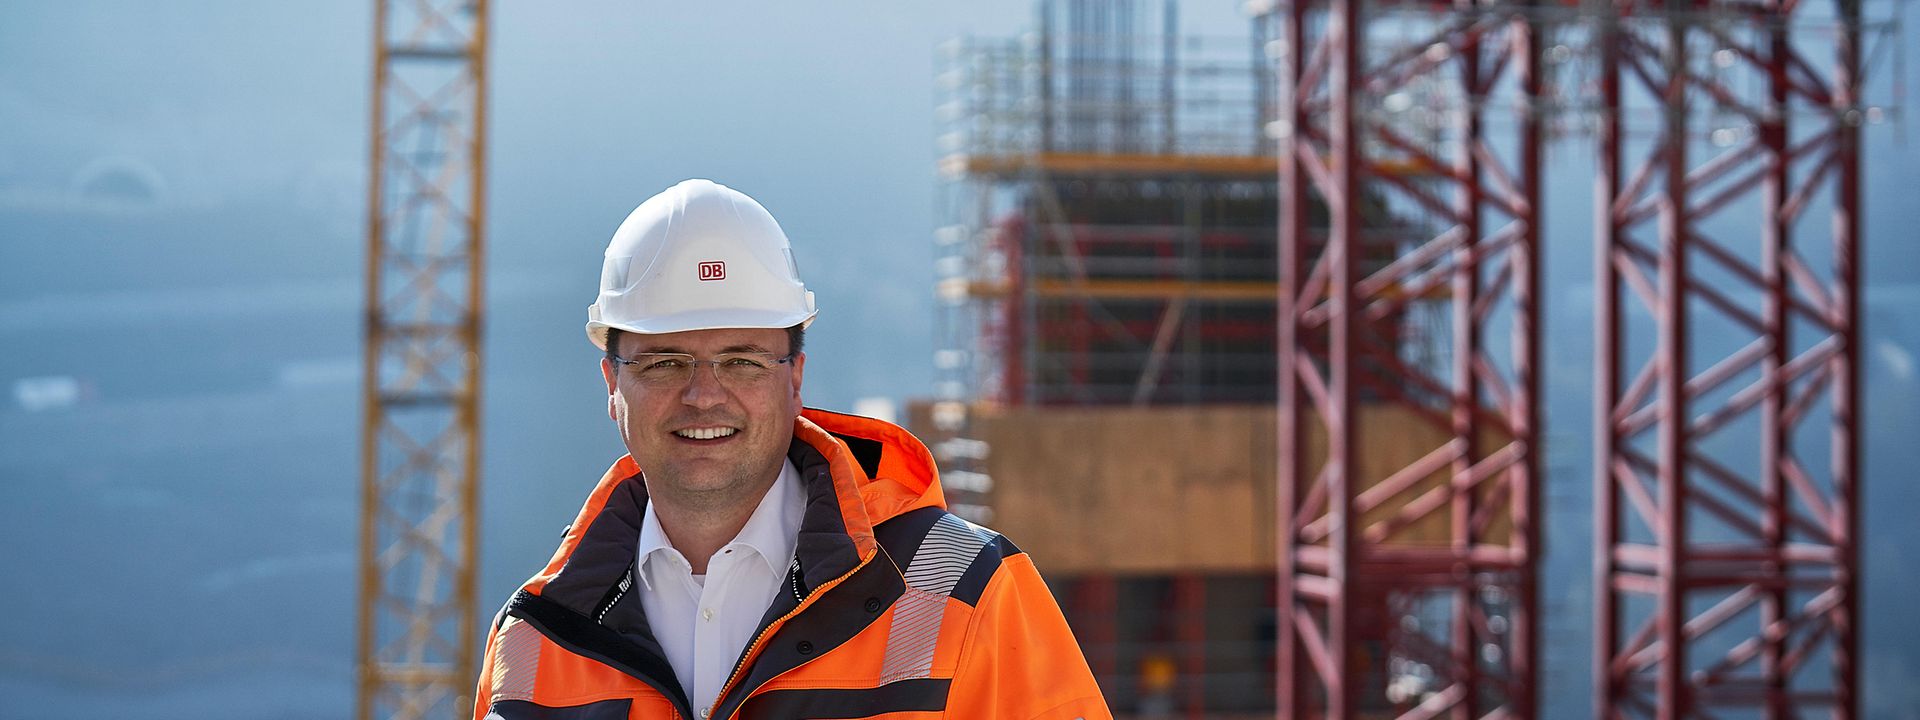 Bauingenieur Jörg steht mit orangener Sicherheitsweste und Helm vor seiner Baustelle. Im Hintergrund steht ein großer Kran.